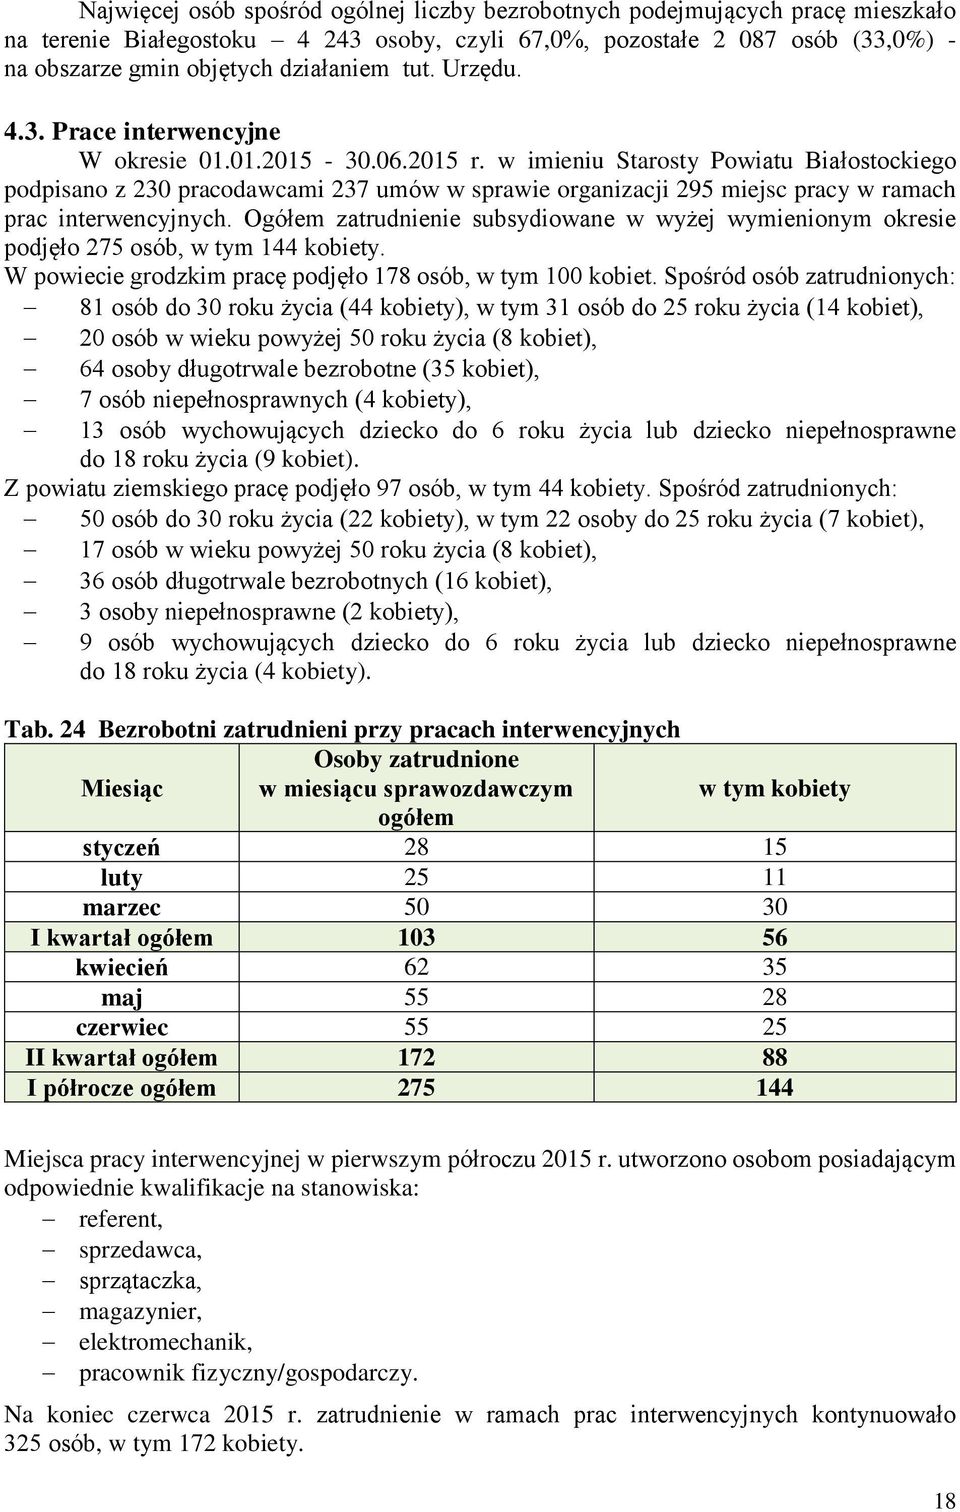 w imieniu Starosty Powiatu Białostockiego podpisano z 230 pracodawcami 237 umów w sprawie organizacji 295 miejsc pracy w ramach prac interwencyjnych.